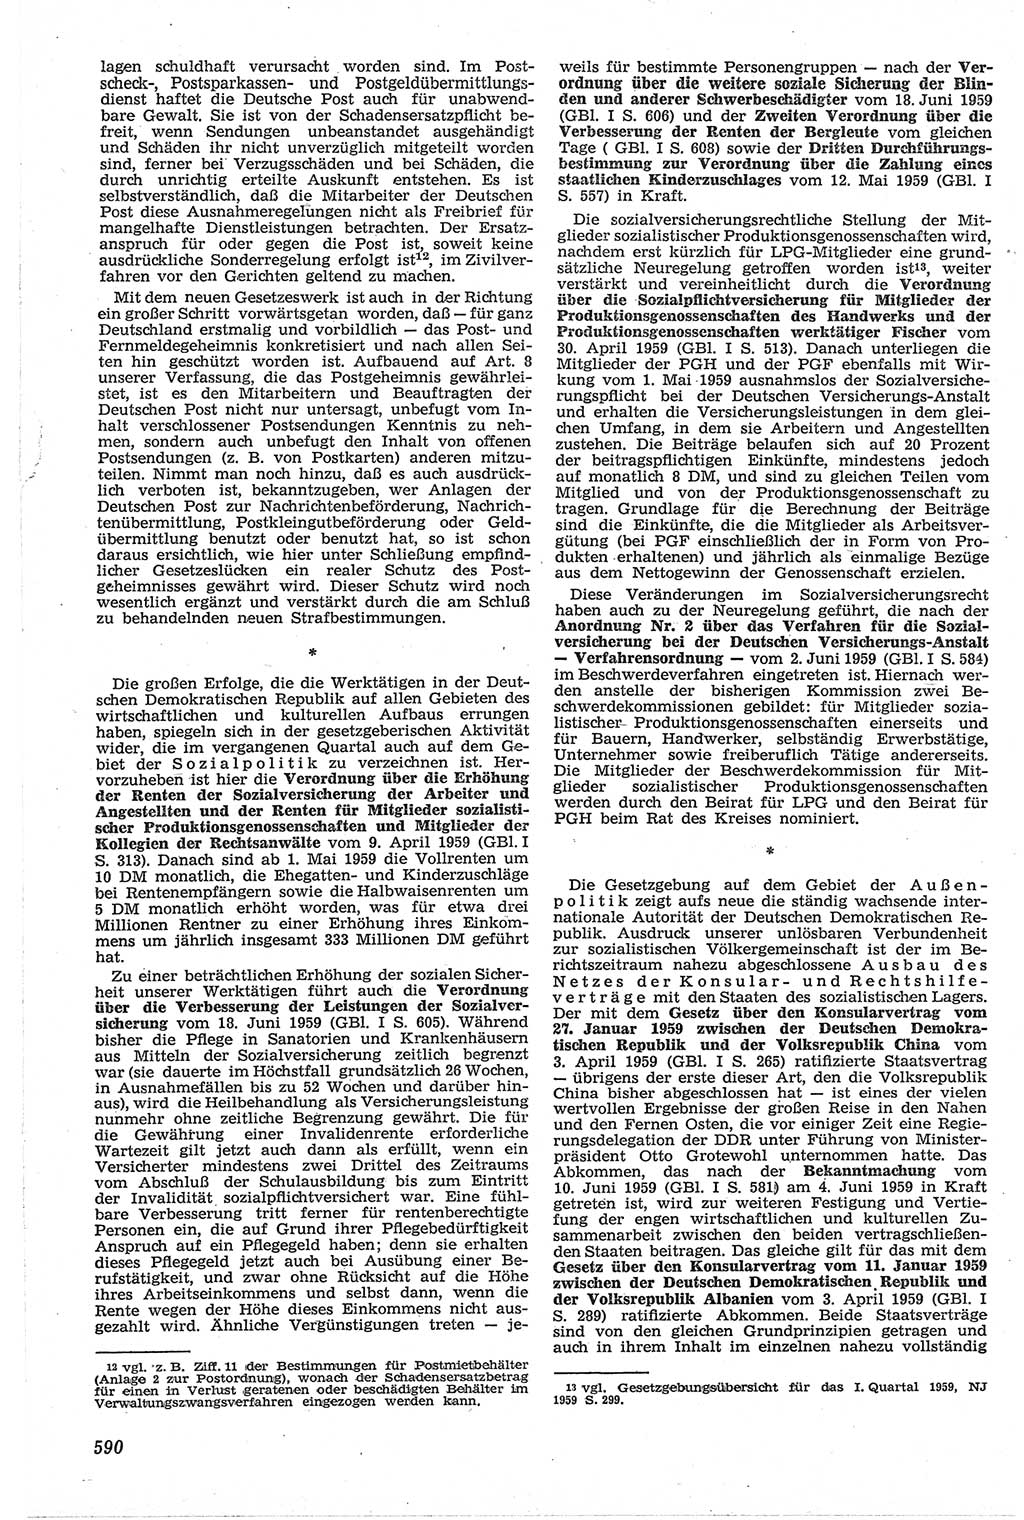 Neue Justiz (NJ), Zeitschrift für Recht und Rechtswissenschaft [Deutsche Demokratische Republik (DDR)], 13. Jahrgang 1959, Seite 590 (NJ DDR 1959, S. 590)